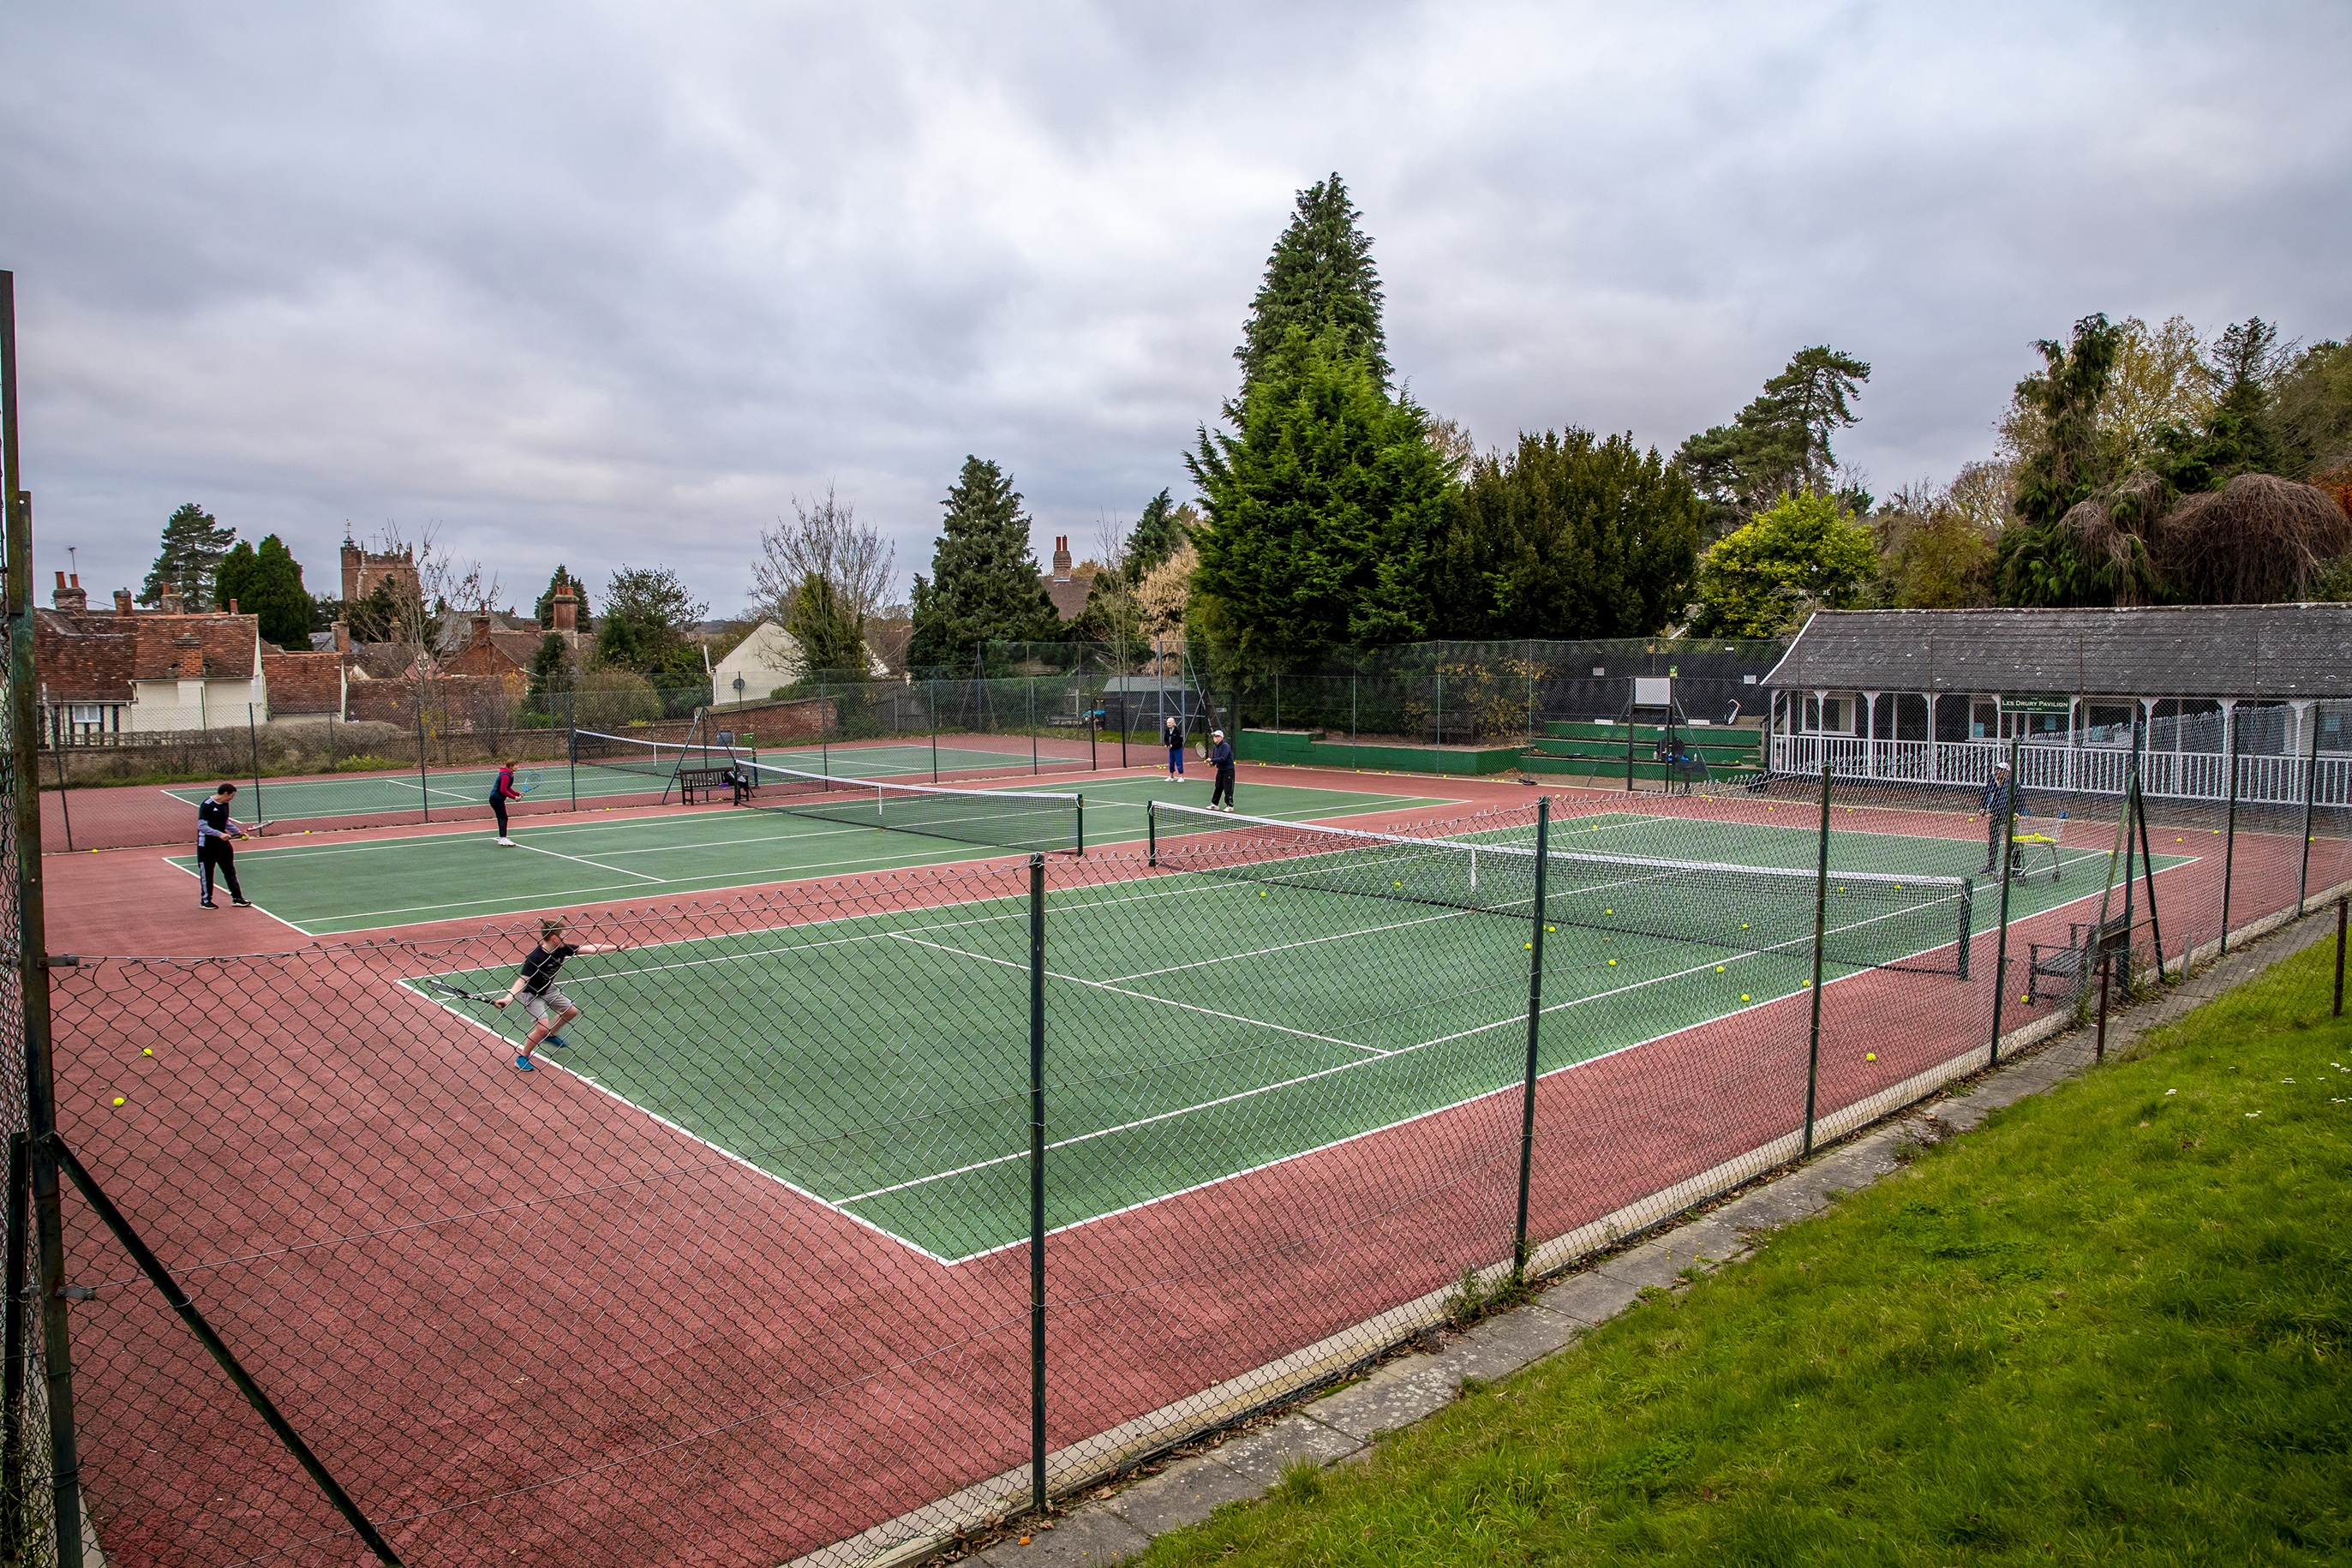 Castle hedingham tennis court - Image